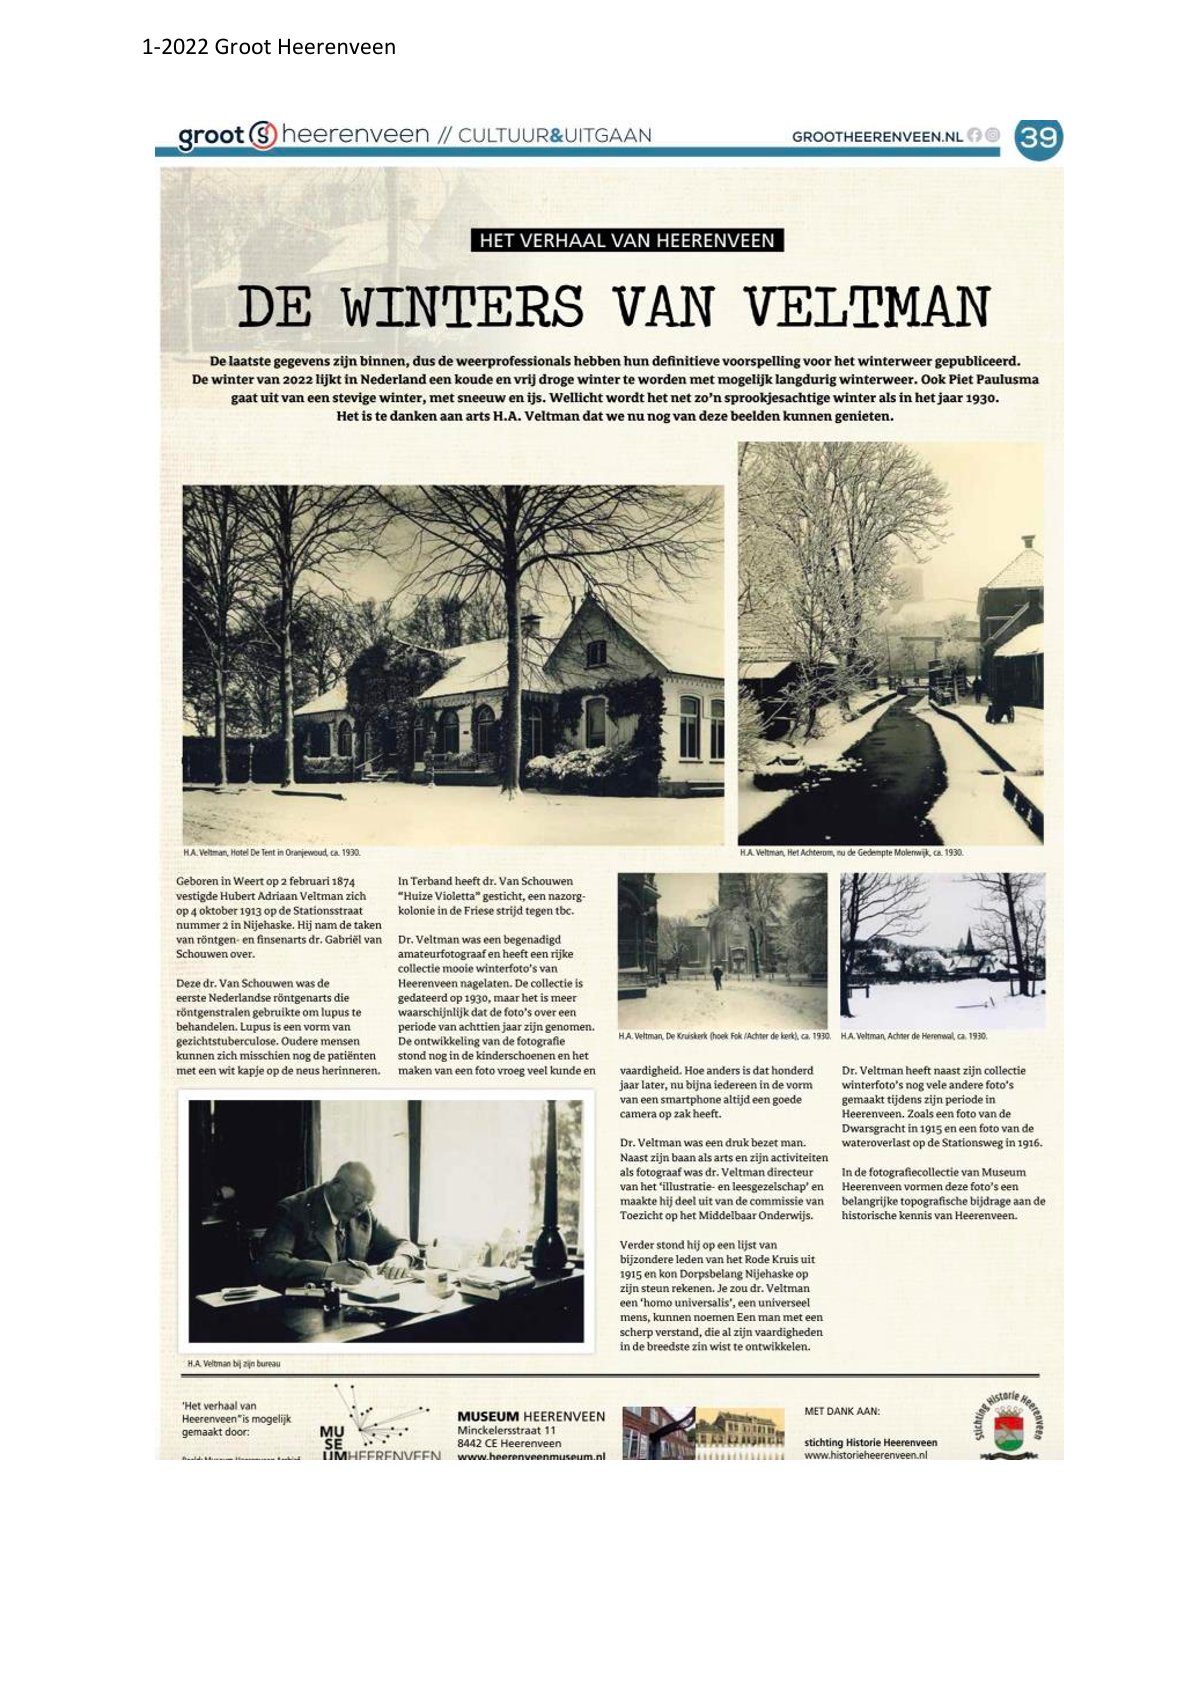 De winters van Veltman